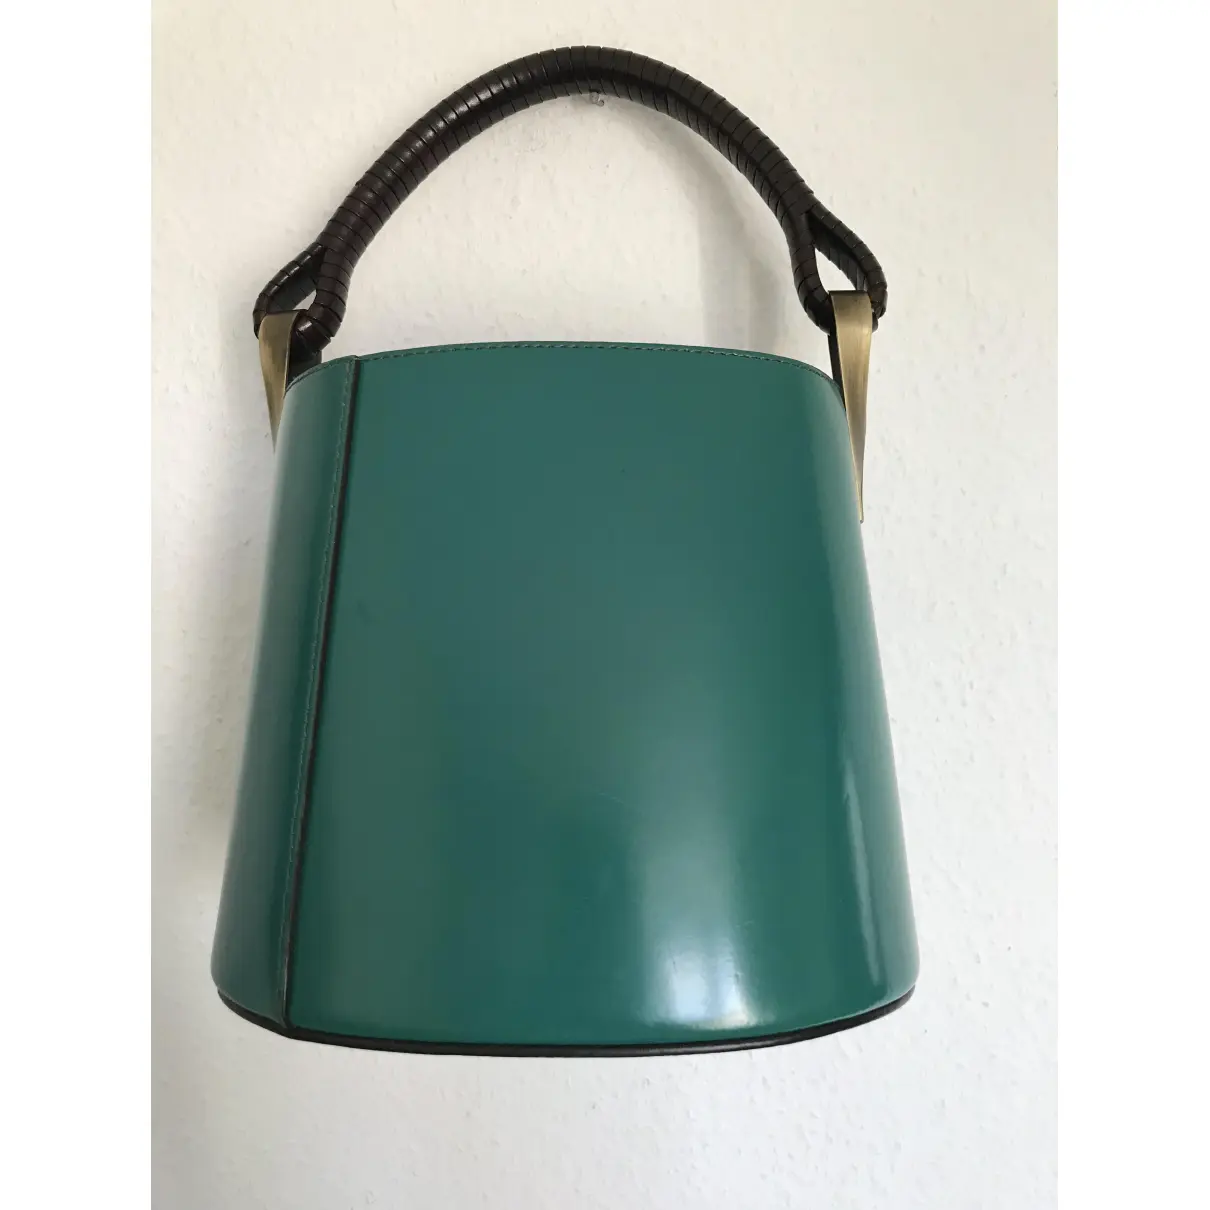 Buy Kenzo Pagodon leather handbag online